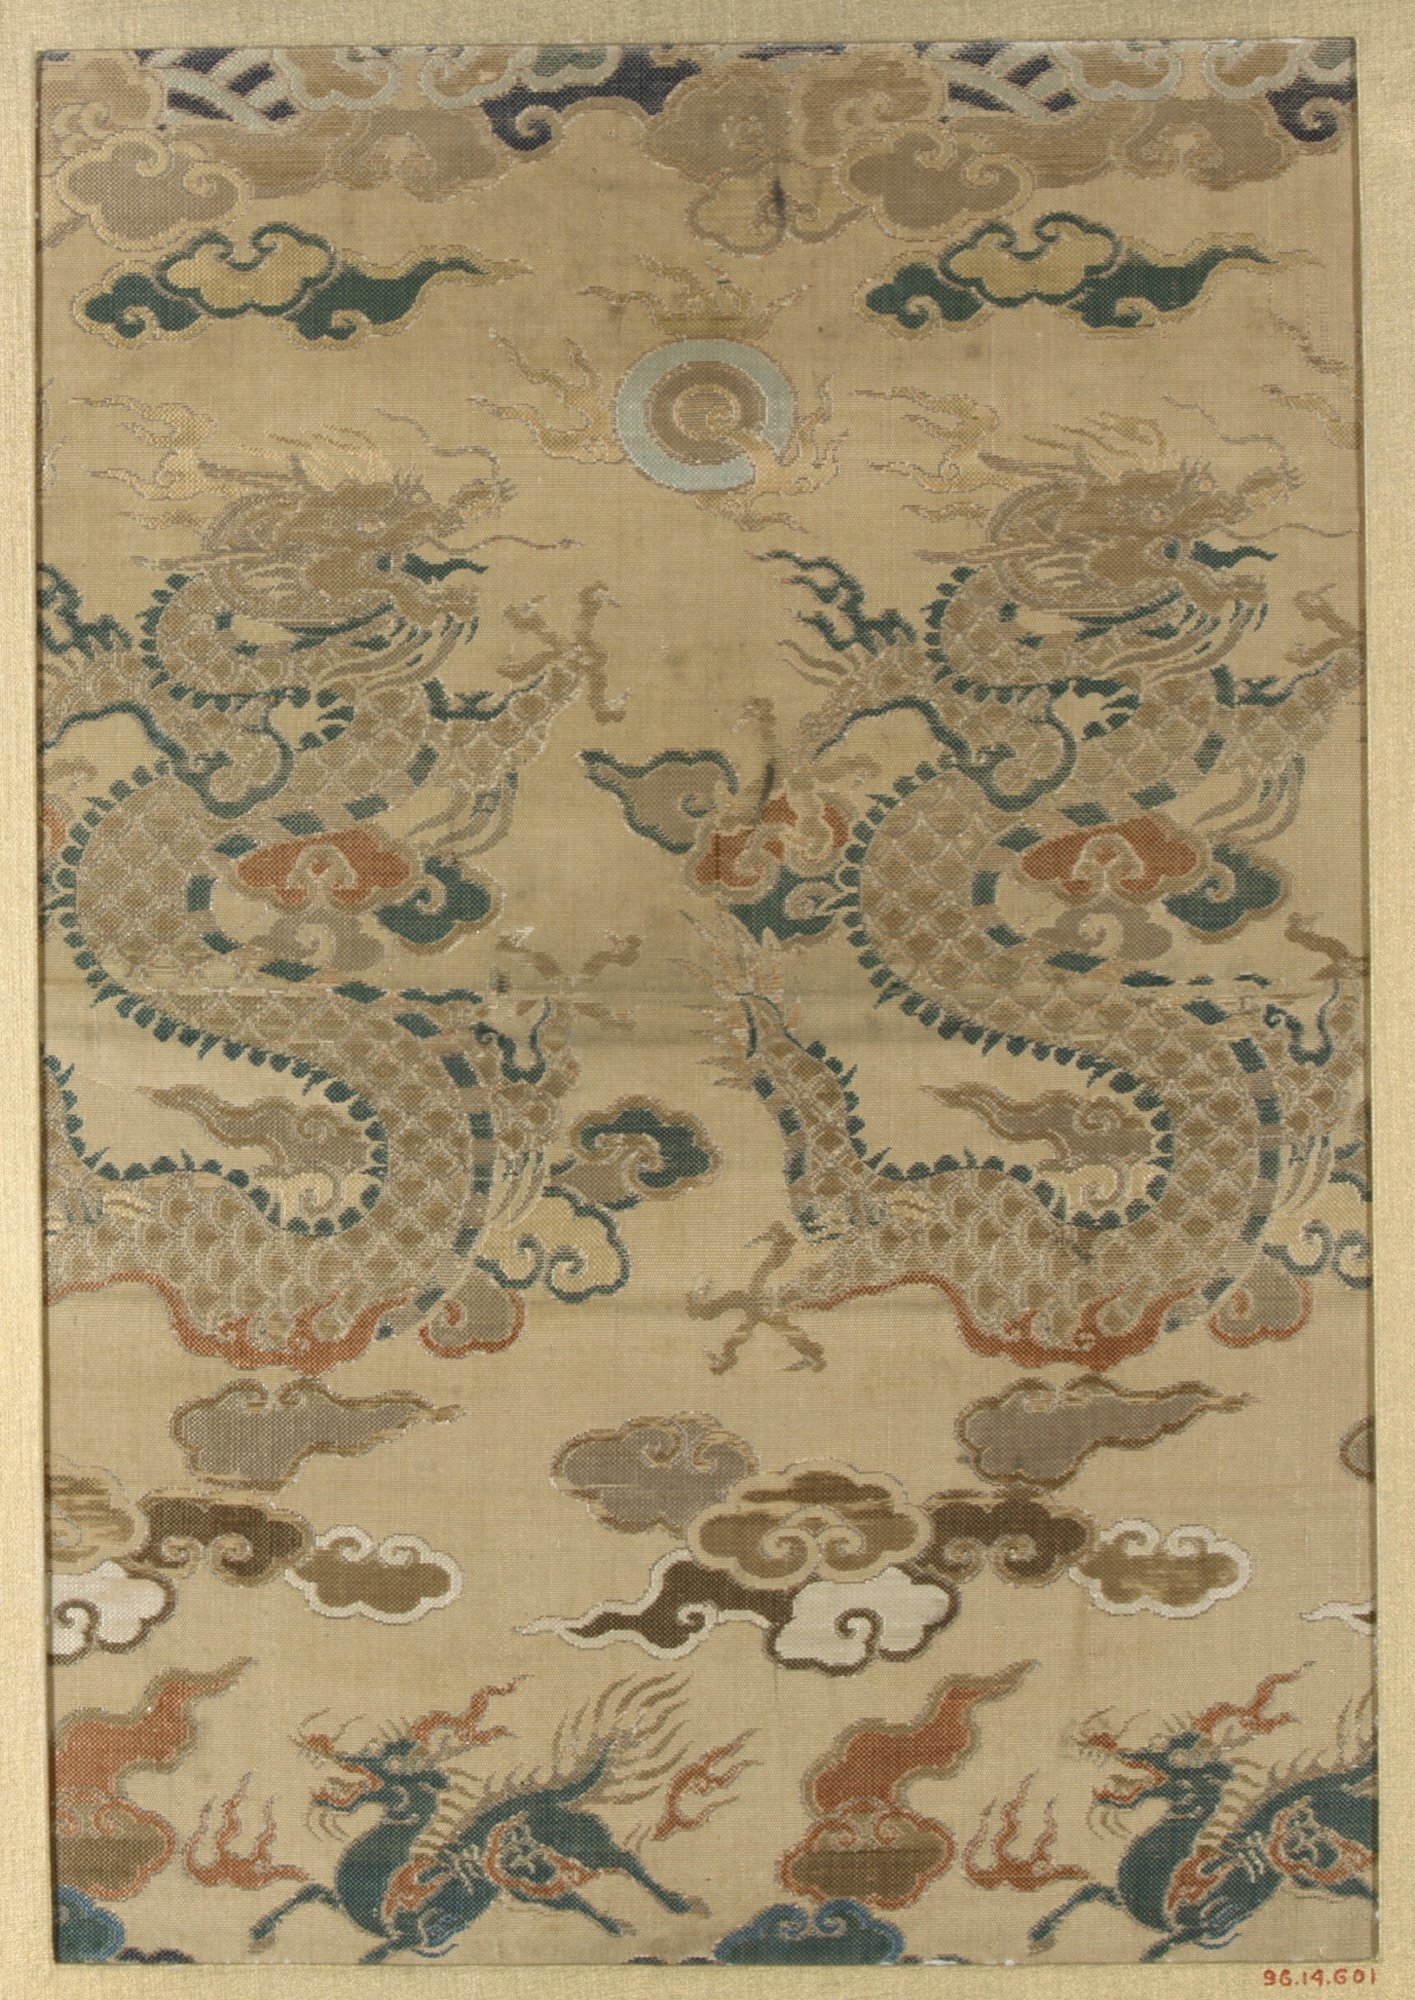 Tranh dệt hình tượng "Lưỡng long triều nhật", một mô-típ tiêu biểu thể hiện con rồng phương Đông quen thuộc. (Tranh: Metropolitan Museum of Art, Wikipedia, Public Domain)